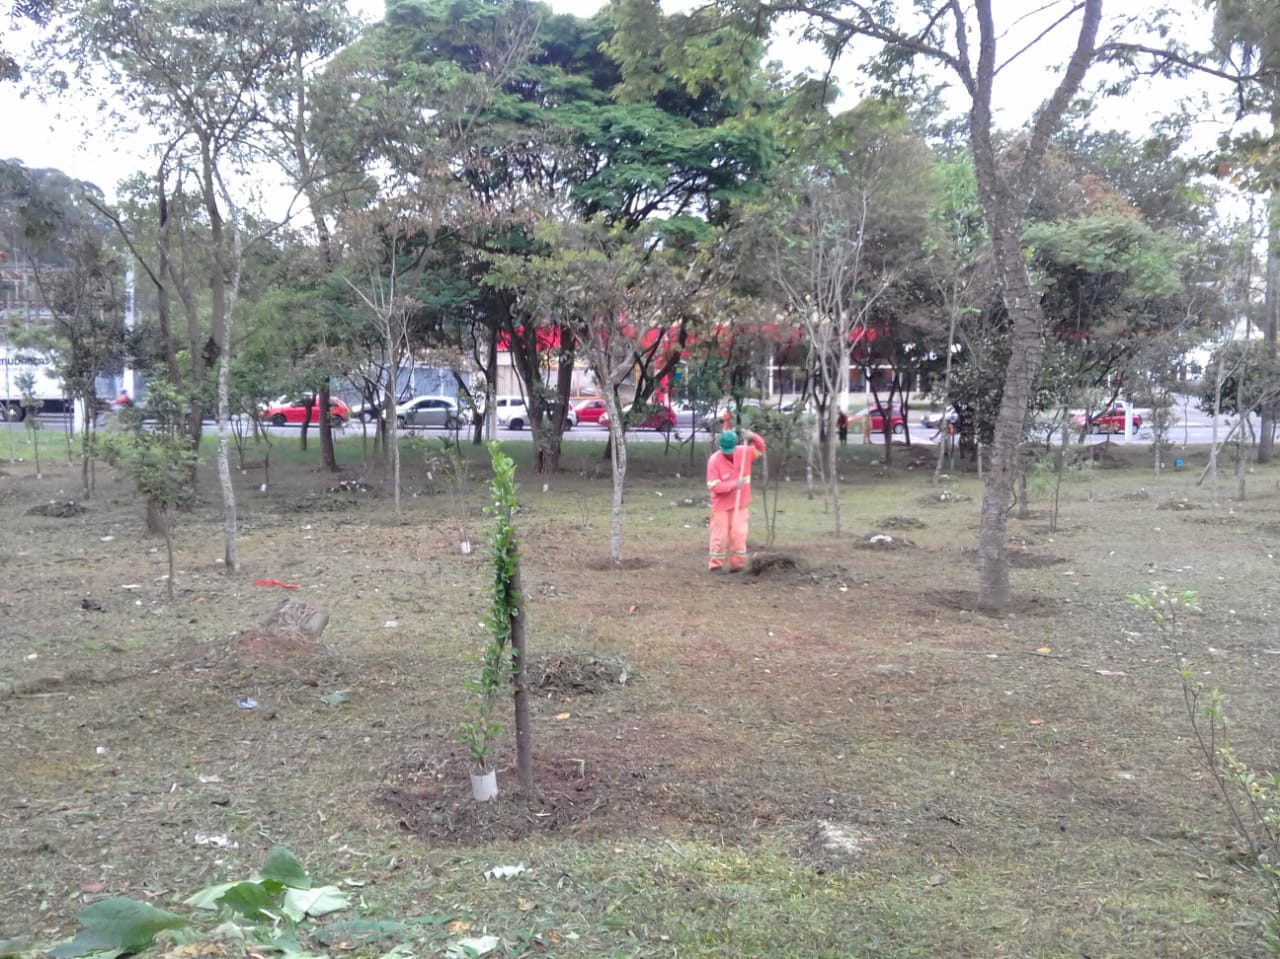 #PraCegoVer - Trabalhador da Subprefeitura recolhe a grama cortada da praça. Há árvores e, ao fundo, o trânsito do início da av. Belmira Marin.